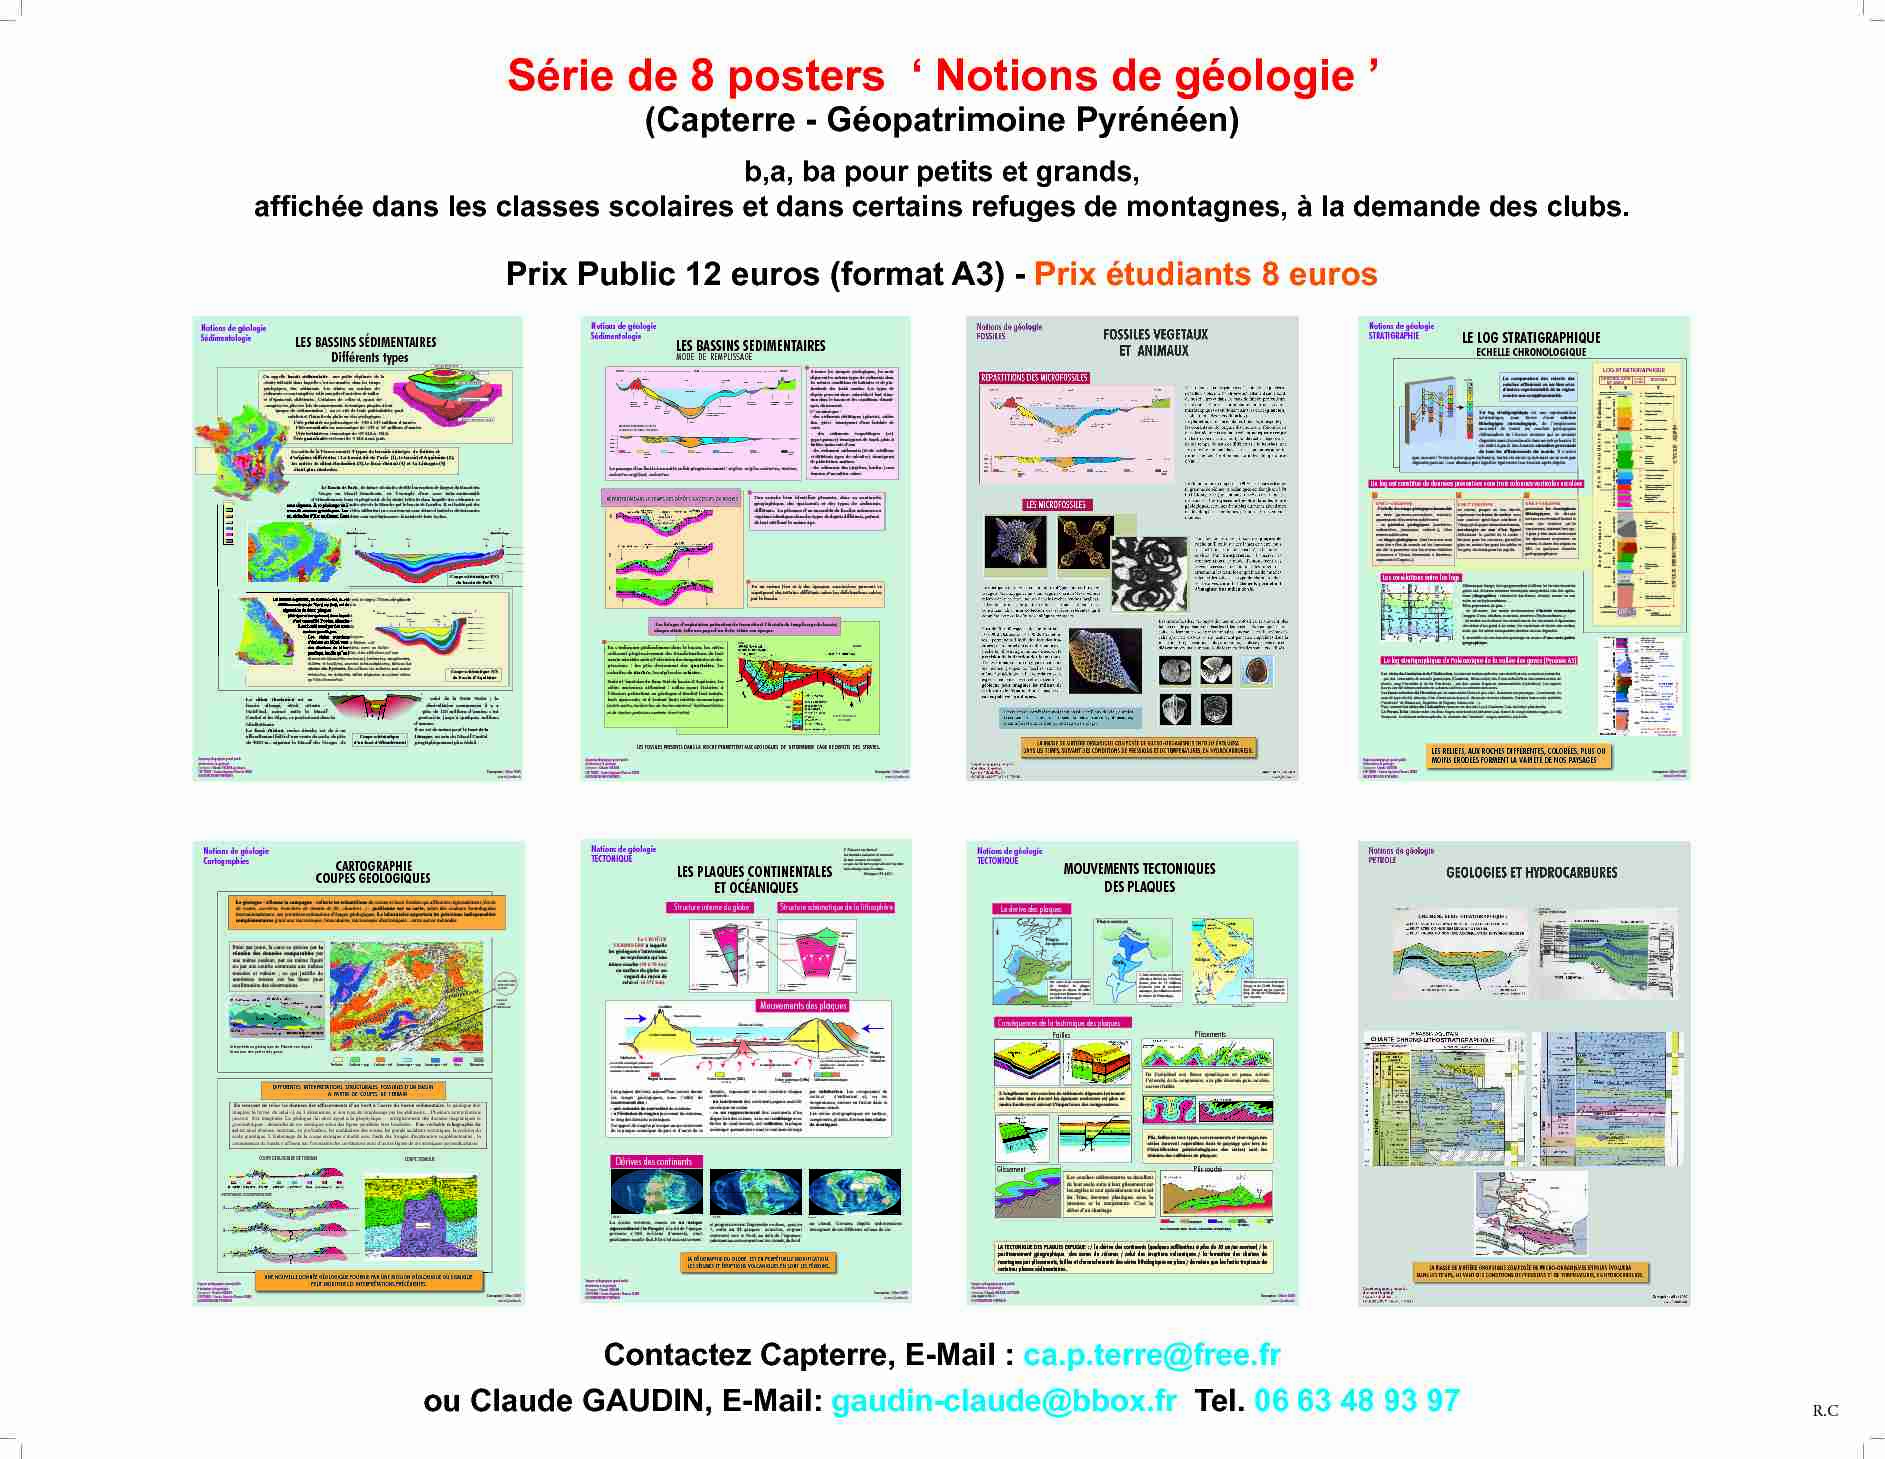 [PDF] Série de 8 posters  Notions de géologie  - Cap Terre